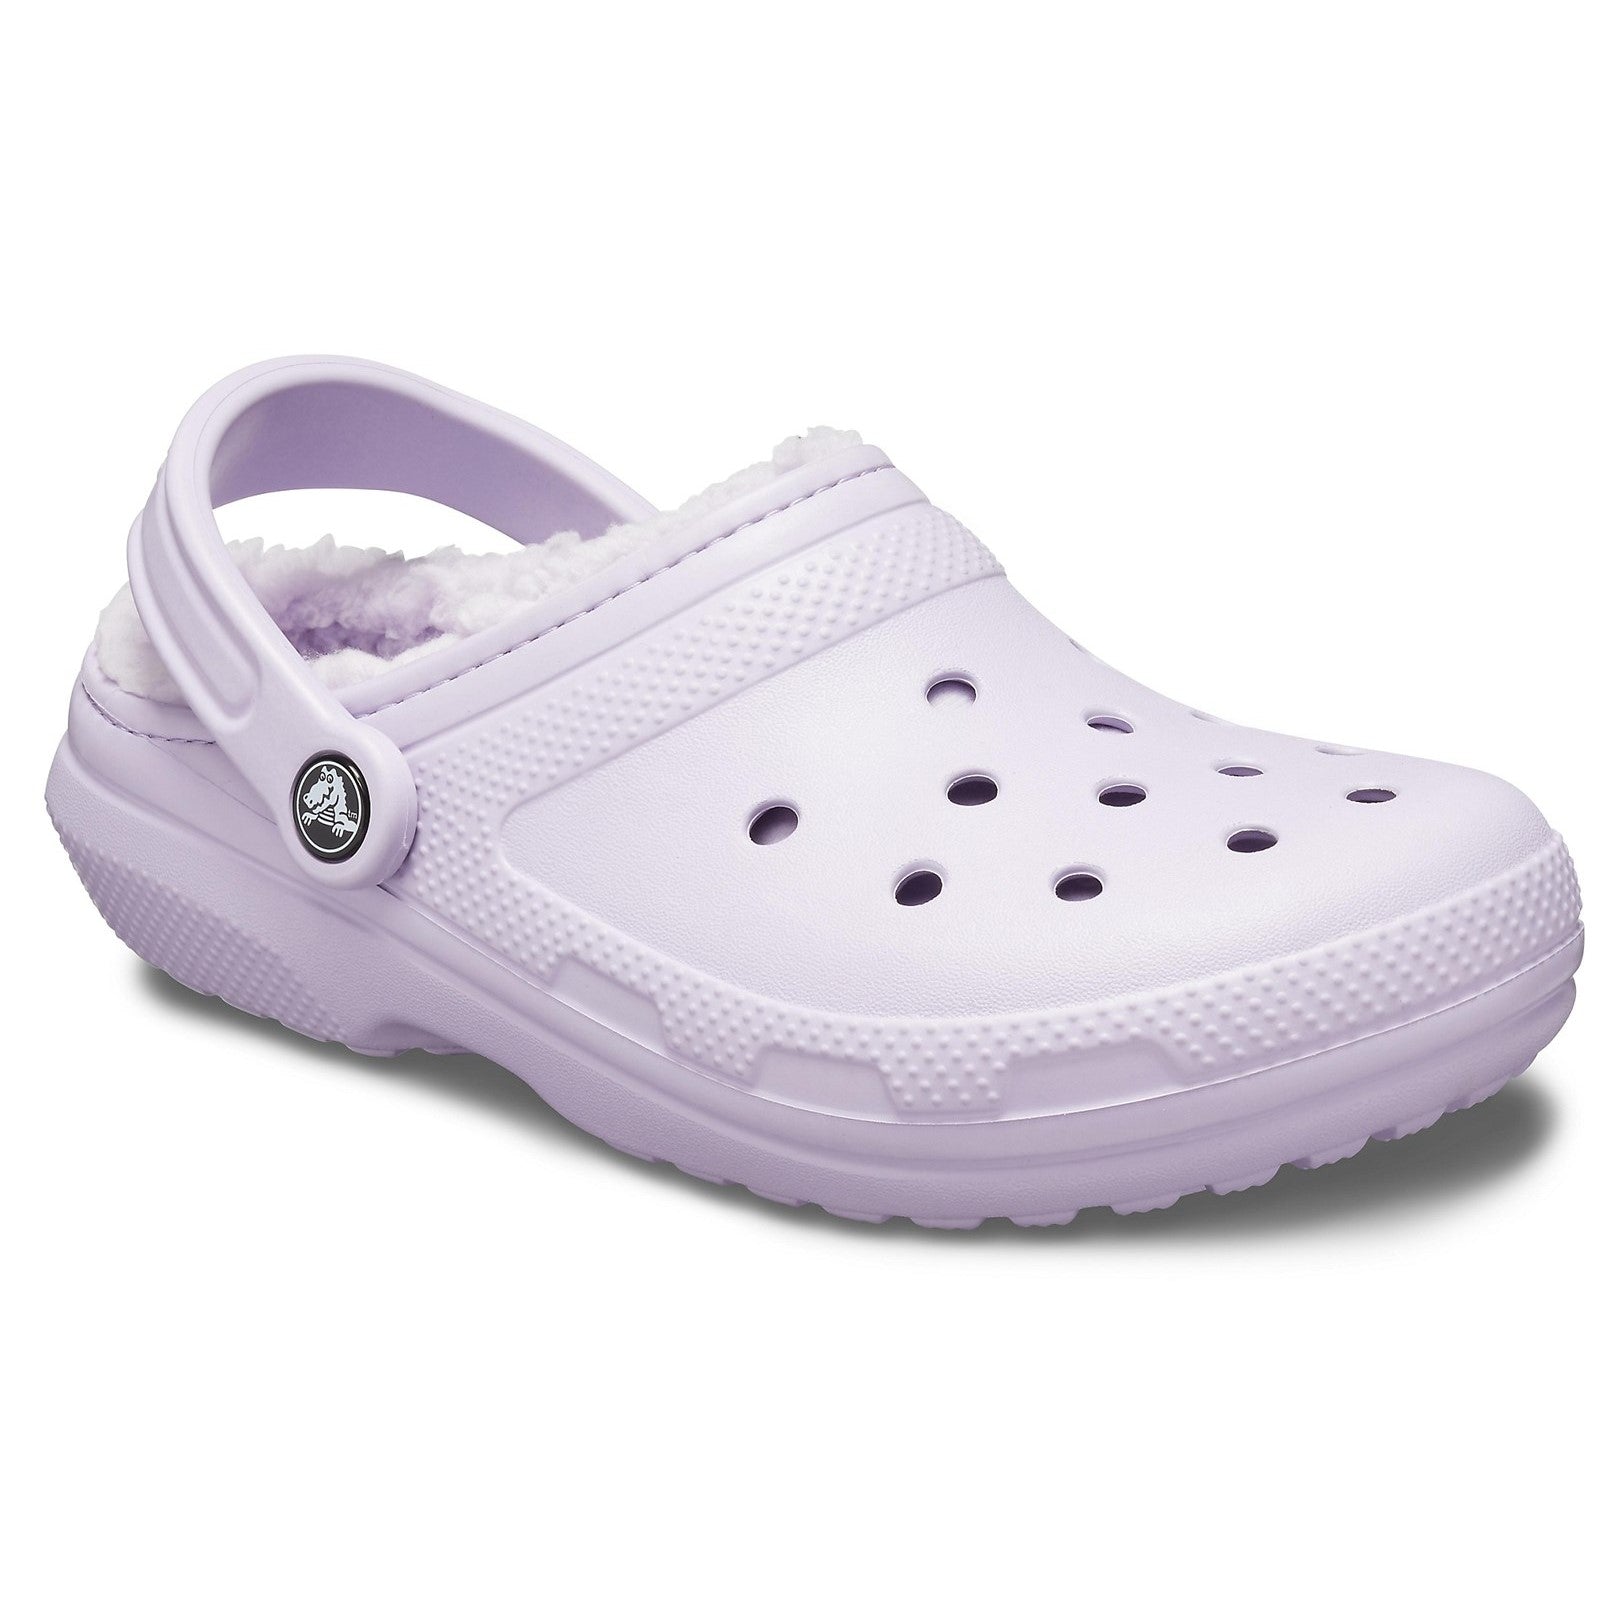 Crocs Classic Lined Clog Sandals